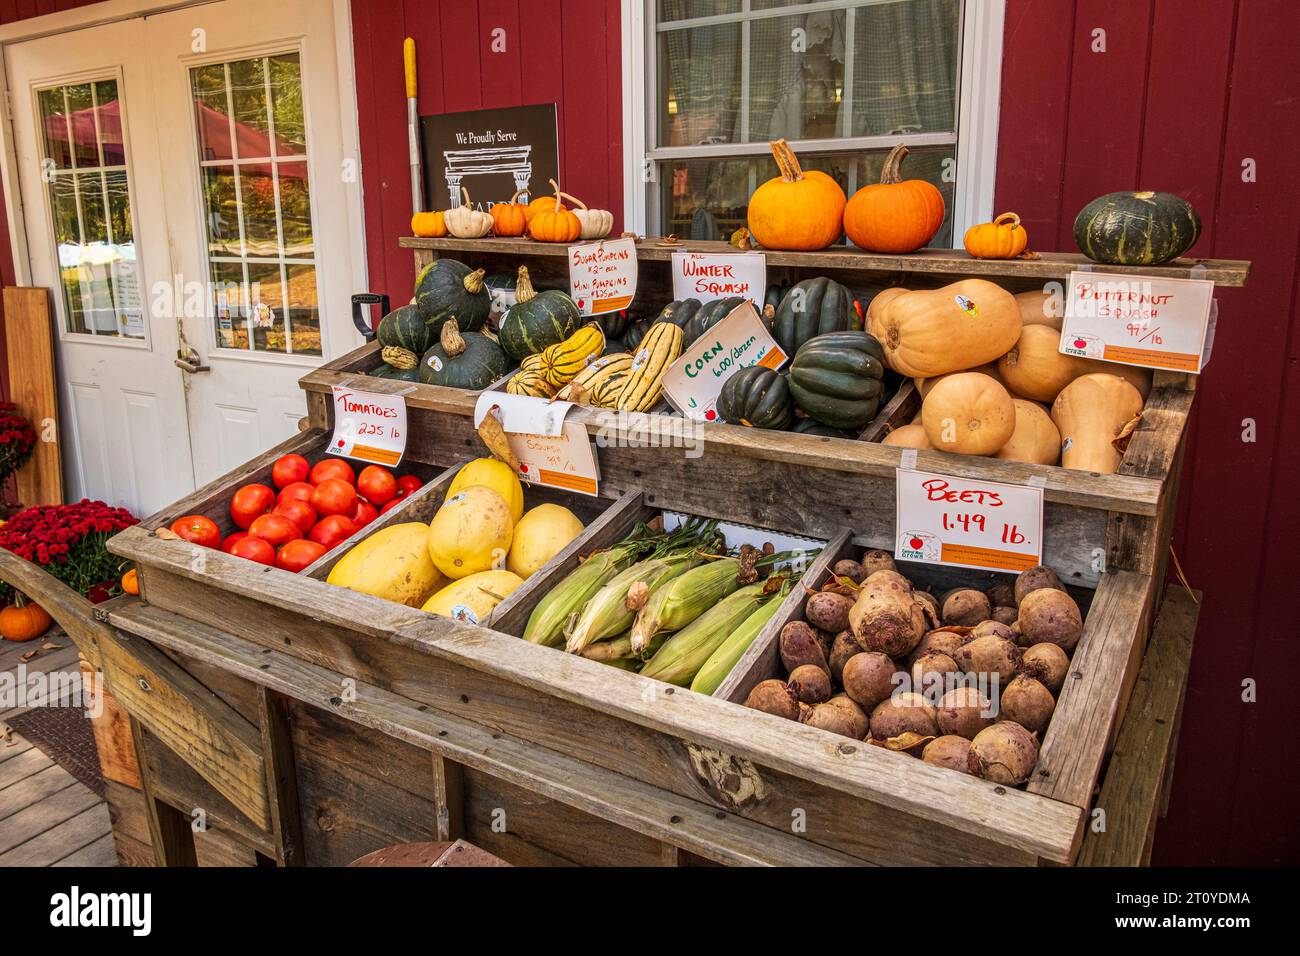 Roadside stand selling vegetables in Massachusetts Stock Photo